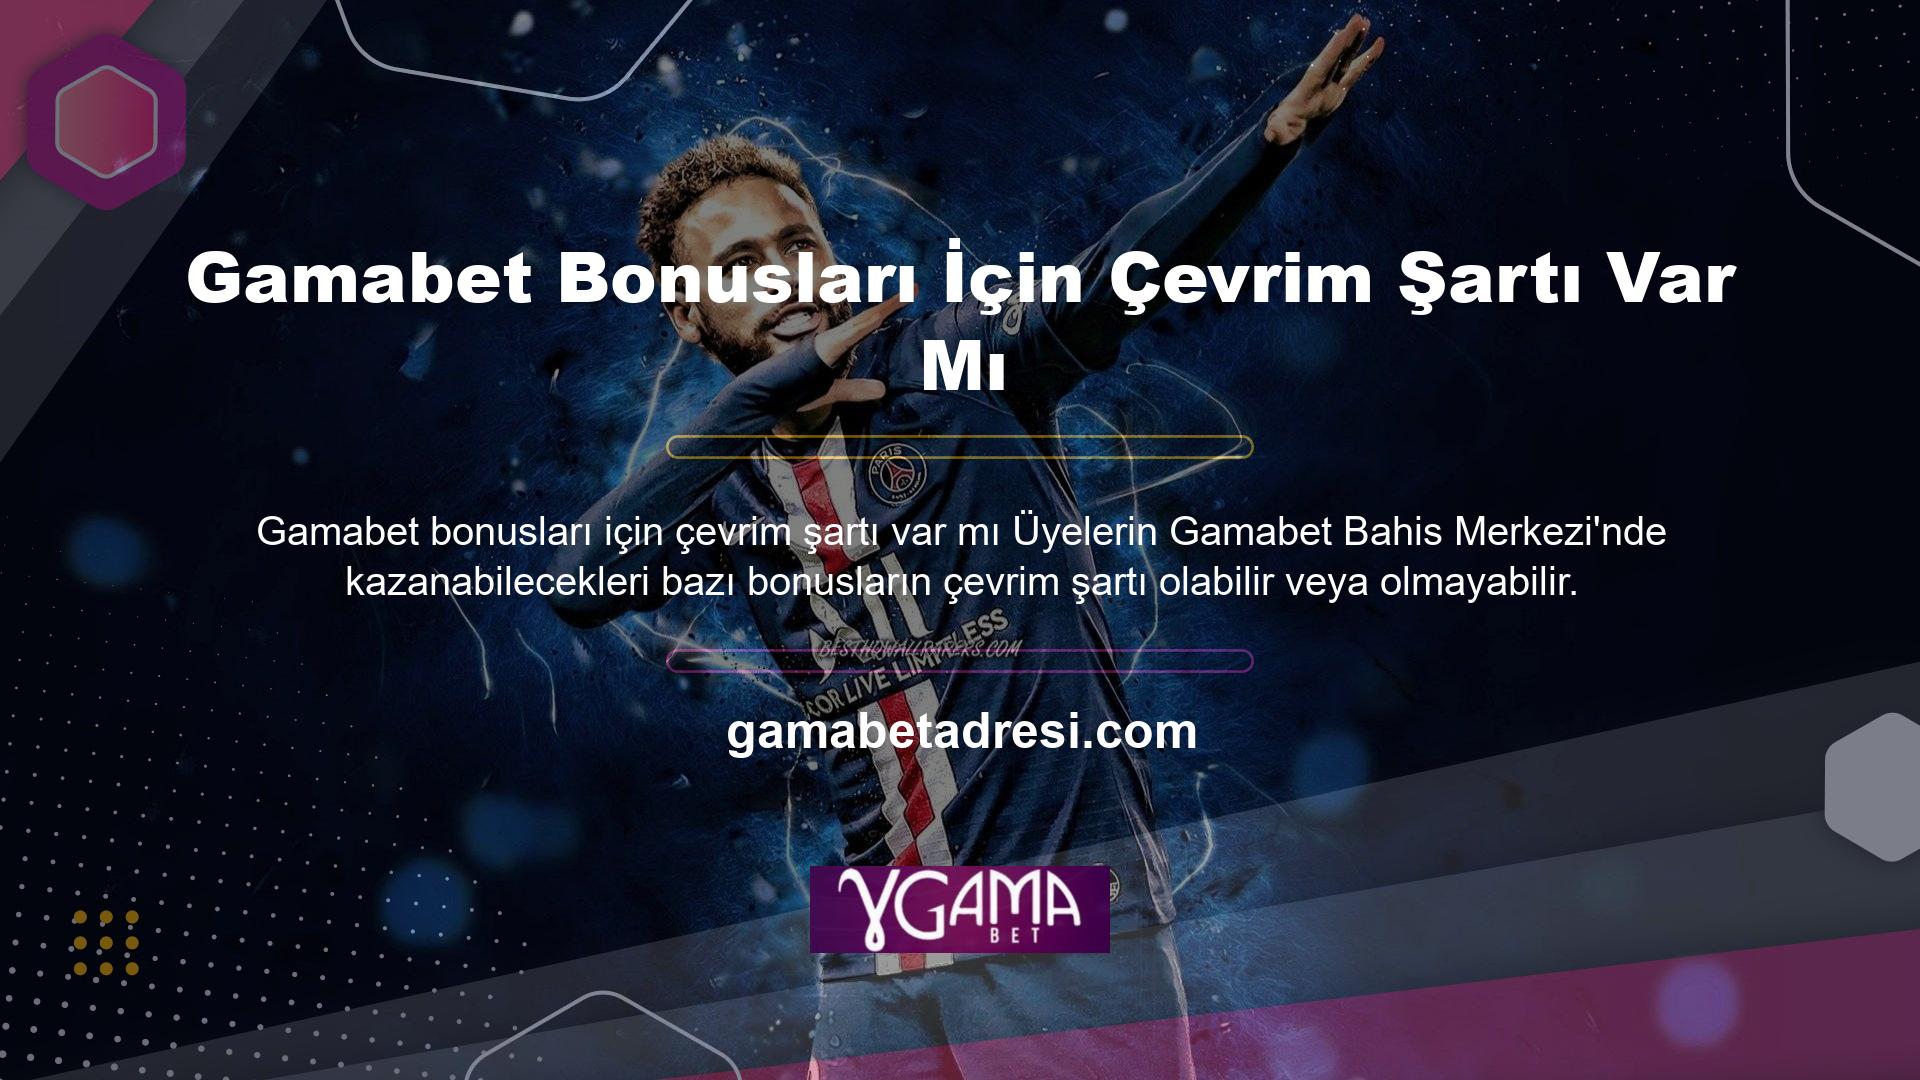 Bahis şirketi Gamabet, oyunculara bonusları bahis gereksinimleriyle dönüştürmeleri için çeşitli hizmetler ve fırsatlar sunar